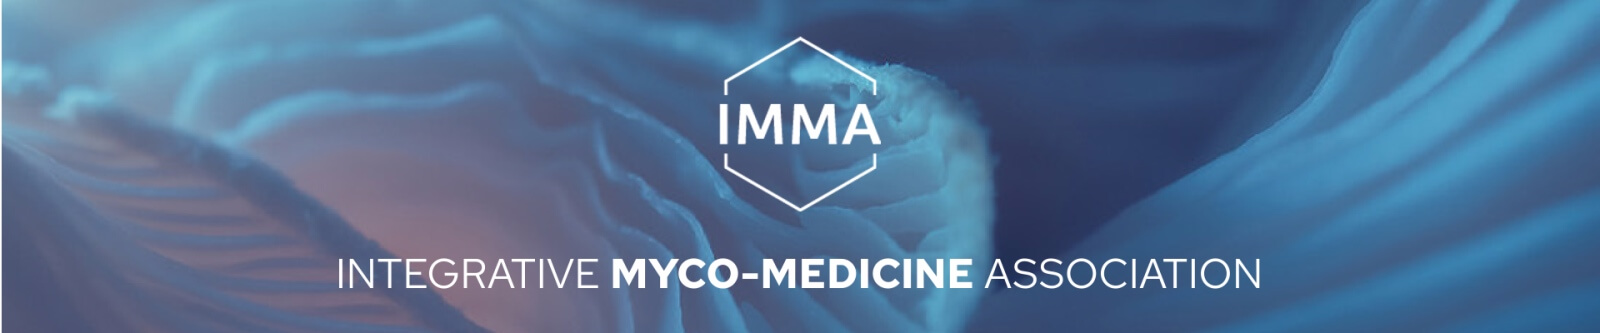 IMMA je evropský biotechnologický leader ve vývoji produktů z bioaktivních adaptogenních hub.